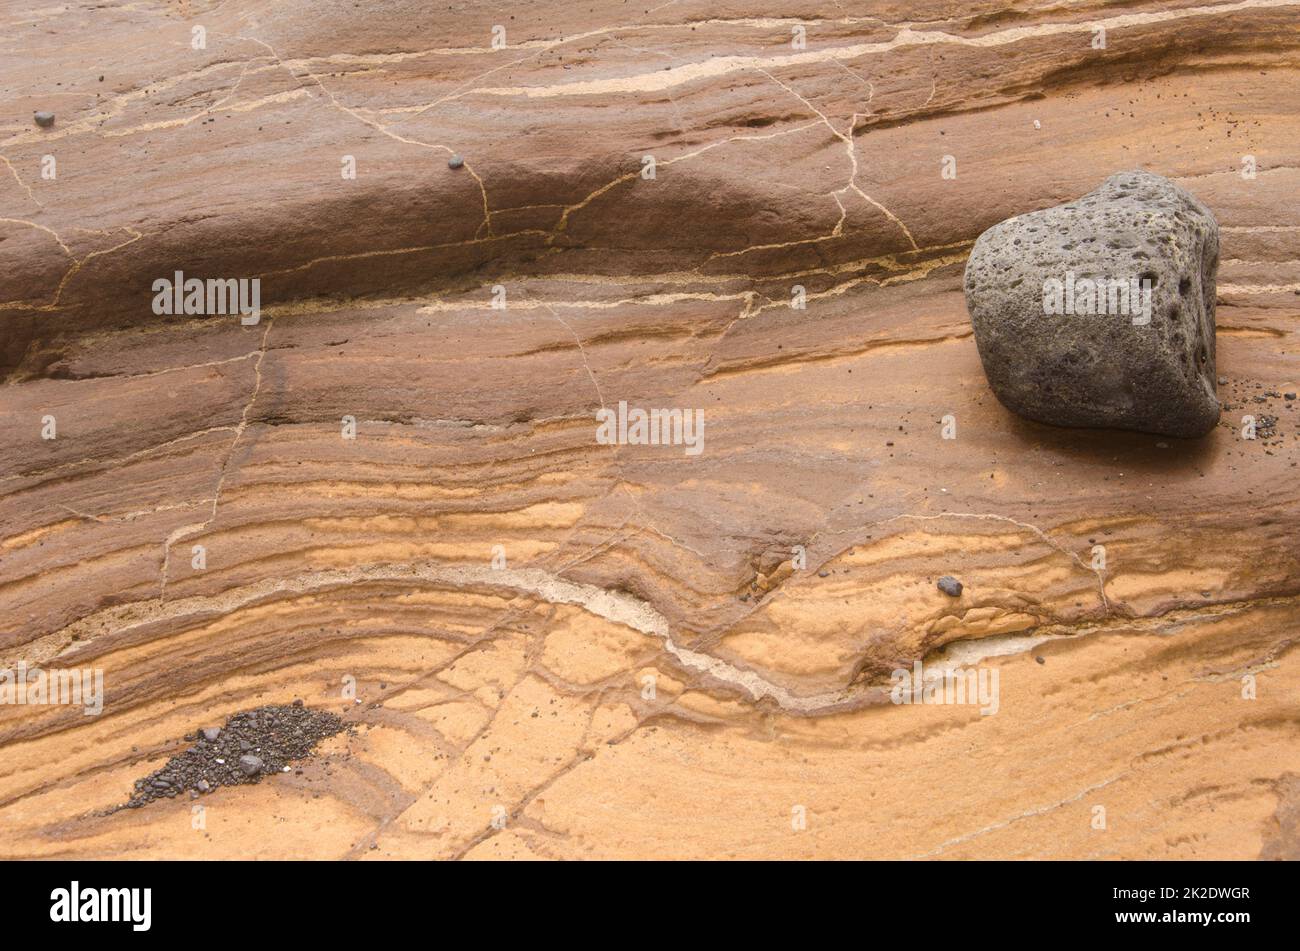 Superficie rocciosa che mostra strati diversi. Foto Stock